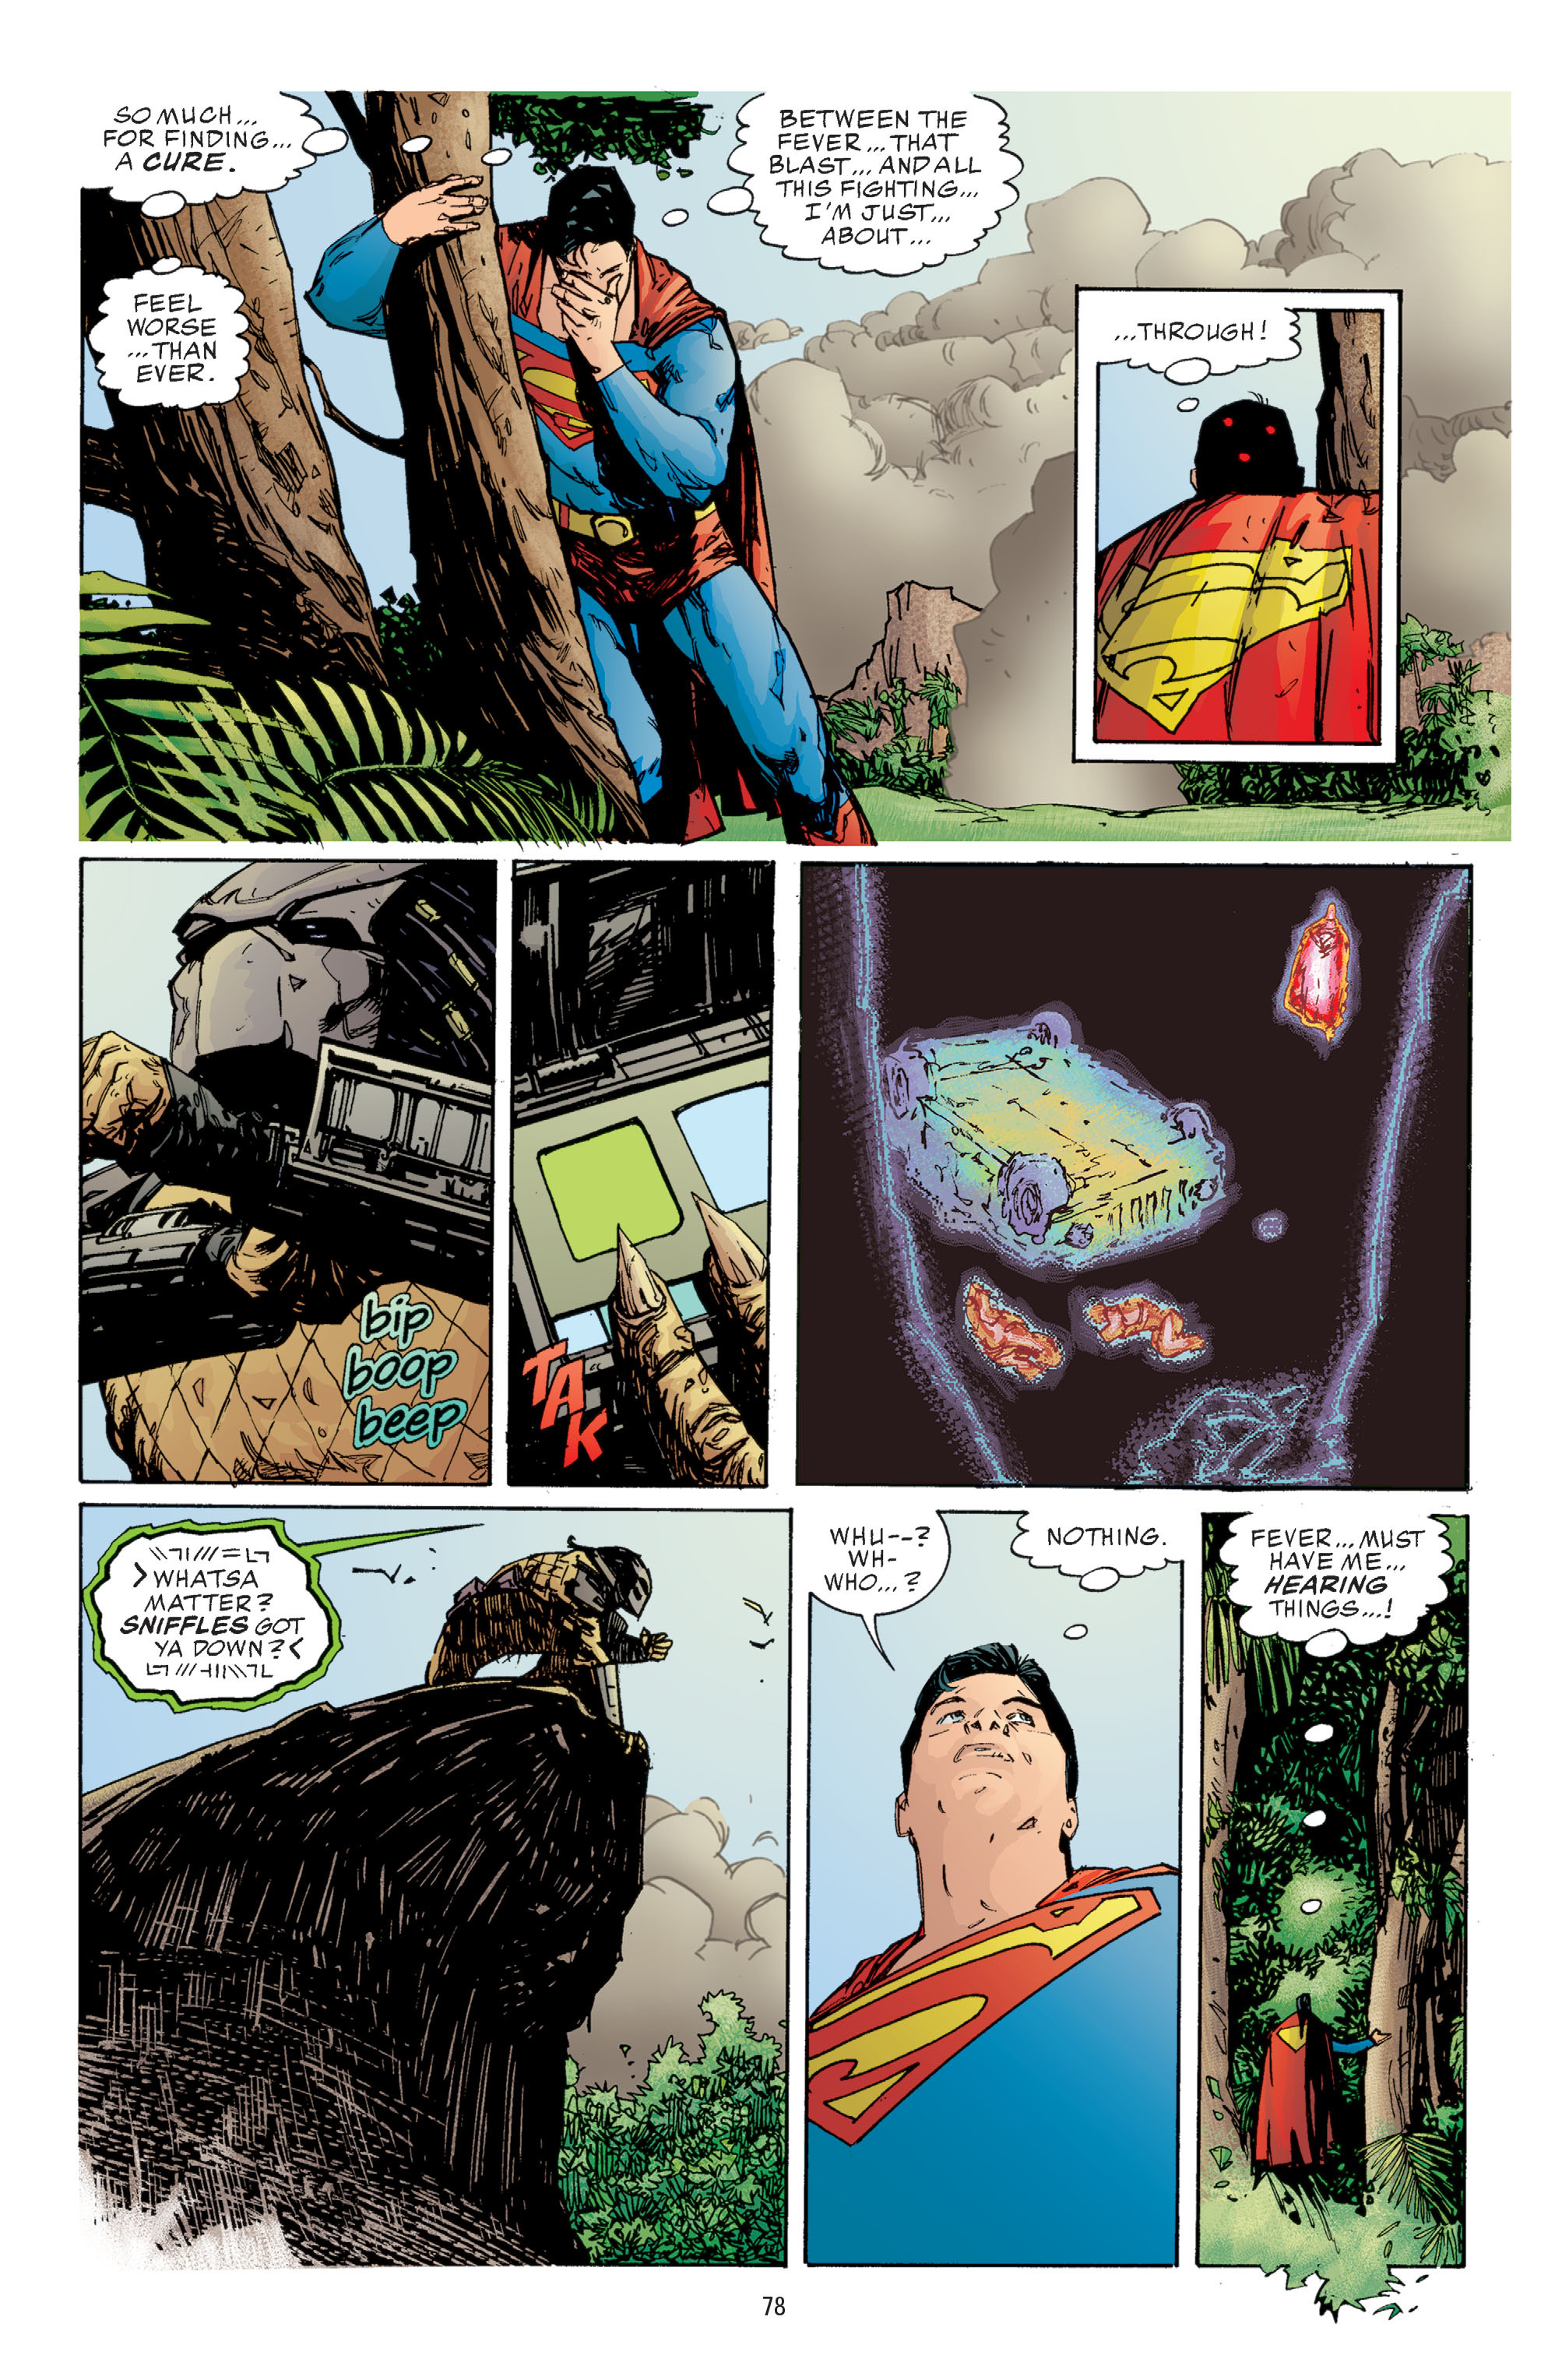 DC Comics/Dark Horse Comics: Justice League Full #1 - English 76